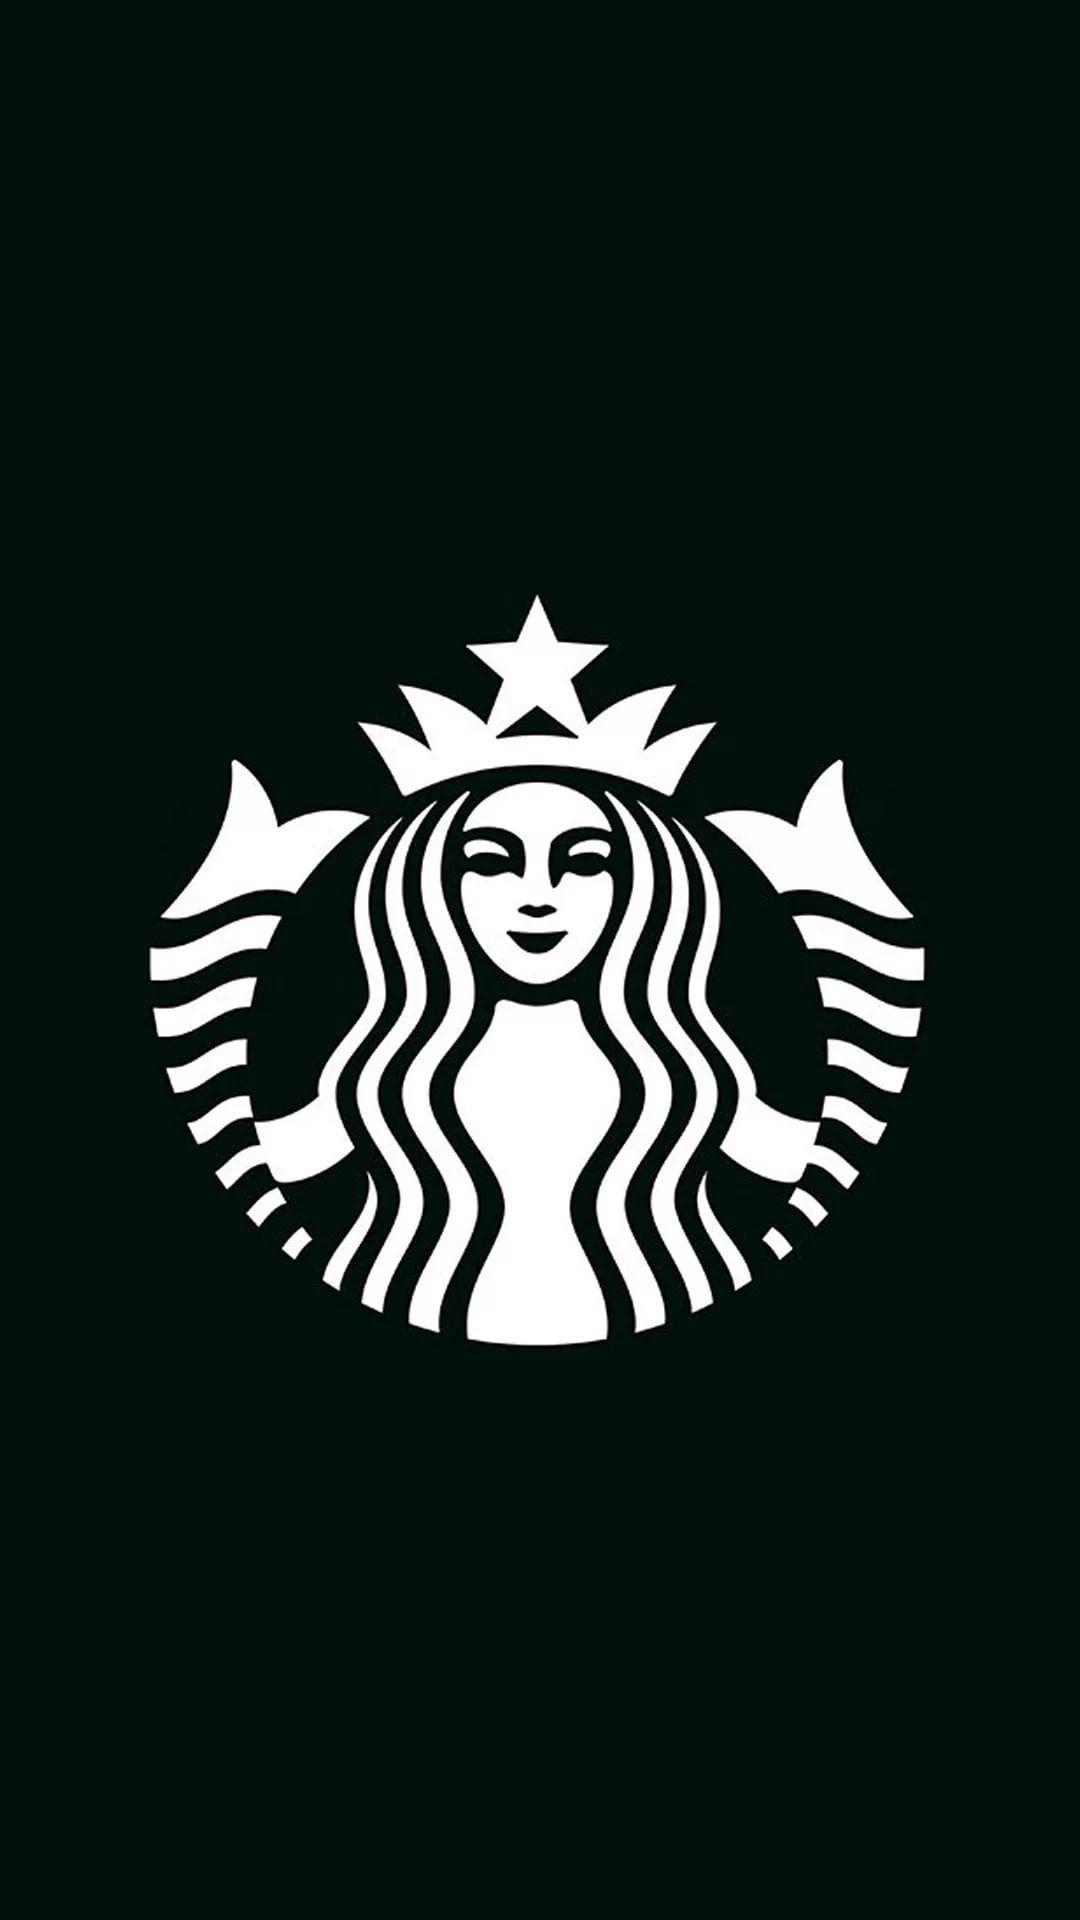 Aesthetic Starbucks Wallpapers - Top Free Aesthetic Starbucks